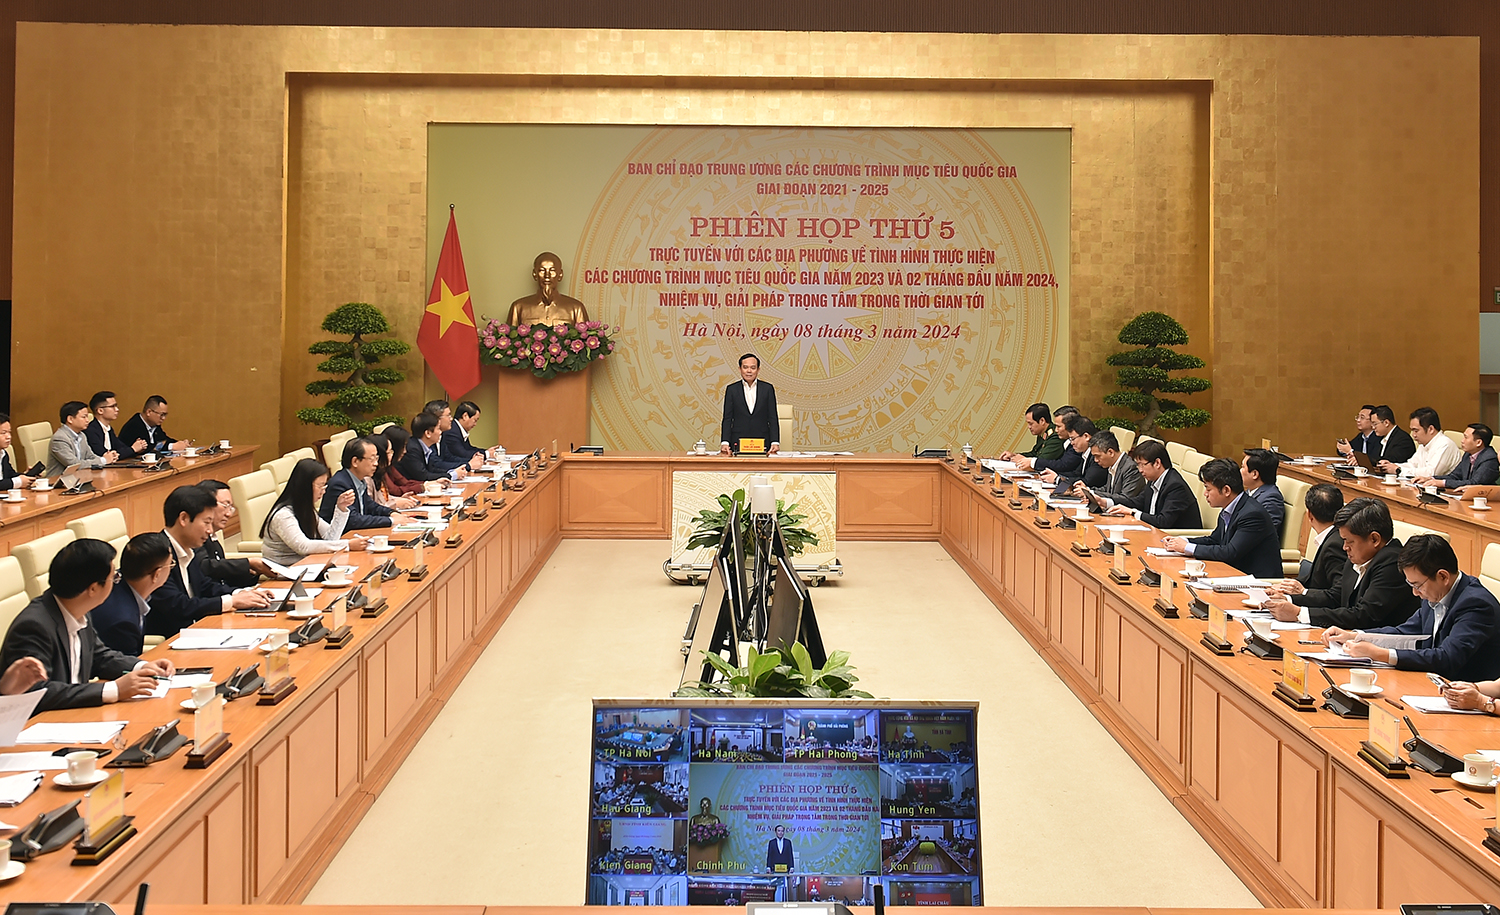 Phó Thủ tướng đề nghị các địa phương phải đề cao trách nhiệm của người đứng đầu, đề cao việc giao việc cho cá nhân phụ trách theo đúng tinh thần chủ trương, nghị quyết của Đảng - Ảnh: VGP/Hải Minh